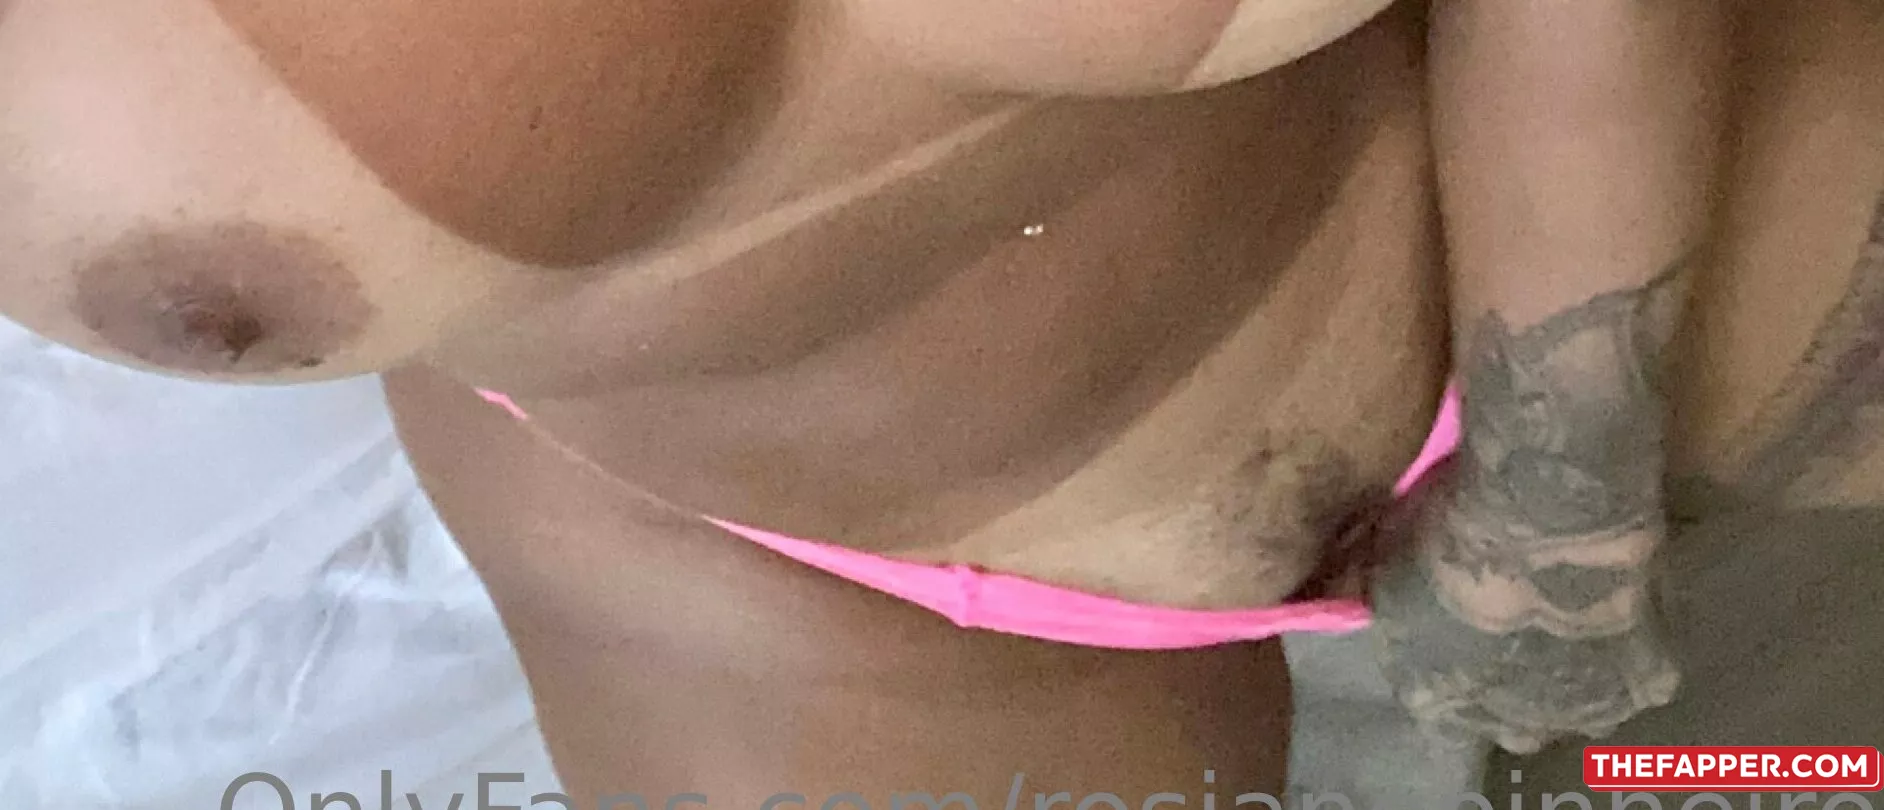 Rosiane Pinheiro  Onlyfans Leaked Nude Image #5OiDUhx7yz